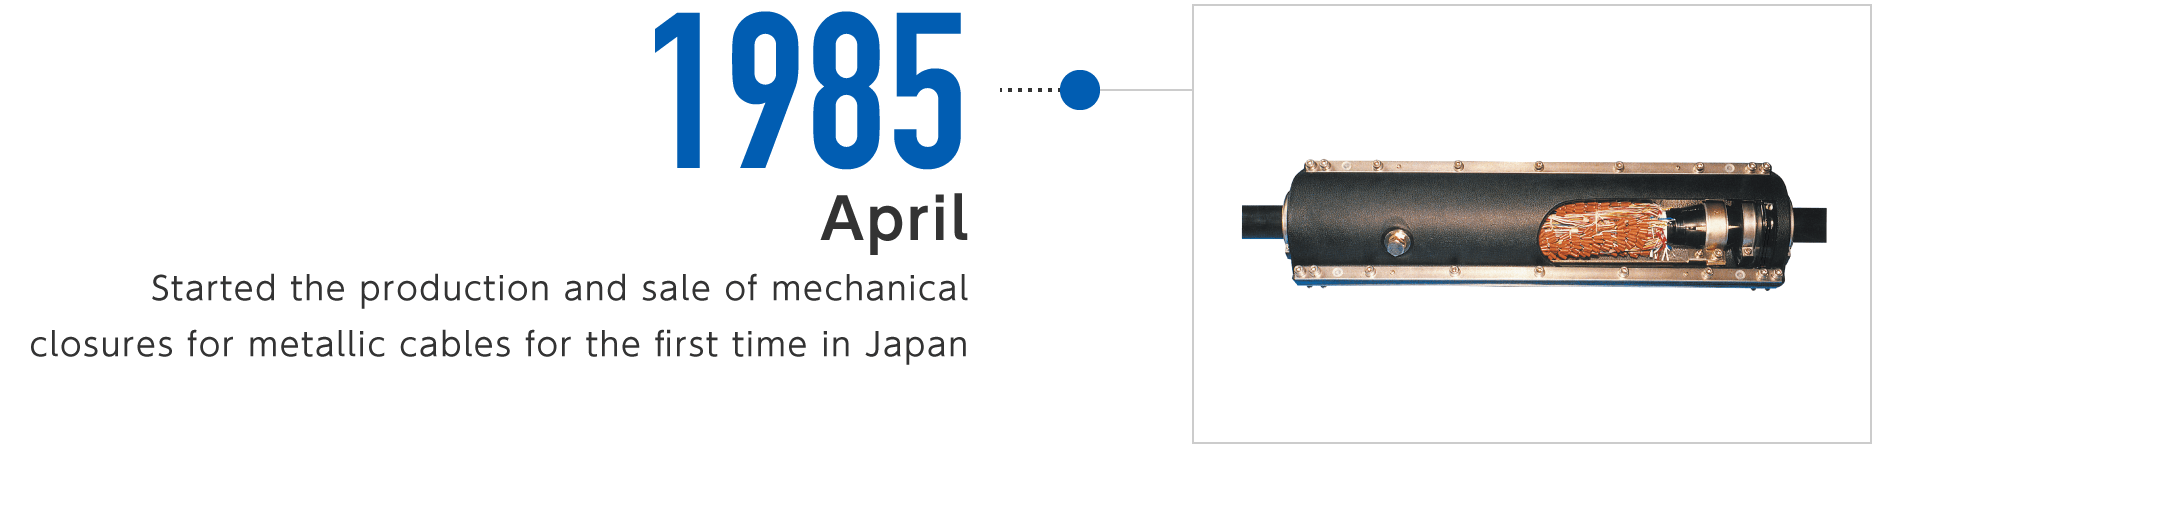 1985年4月-日本初のメタルケーブル用メカニカルクロージャを製造・販売開始